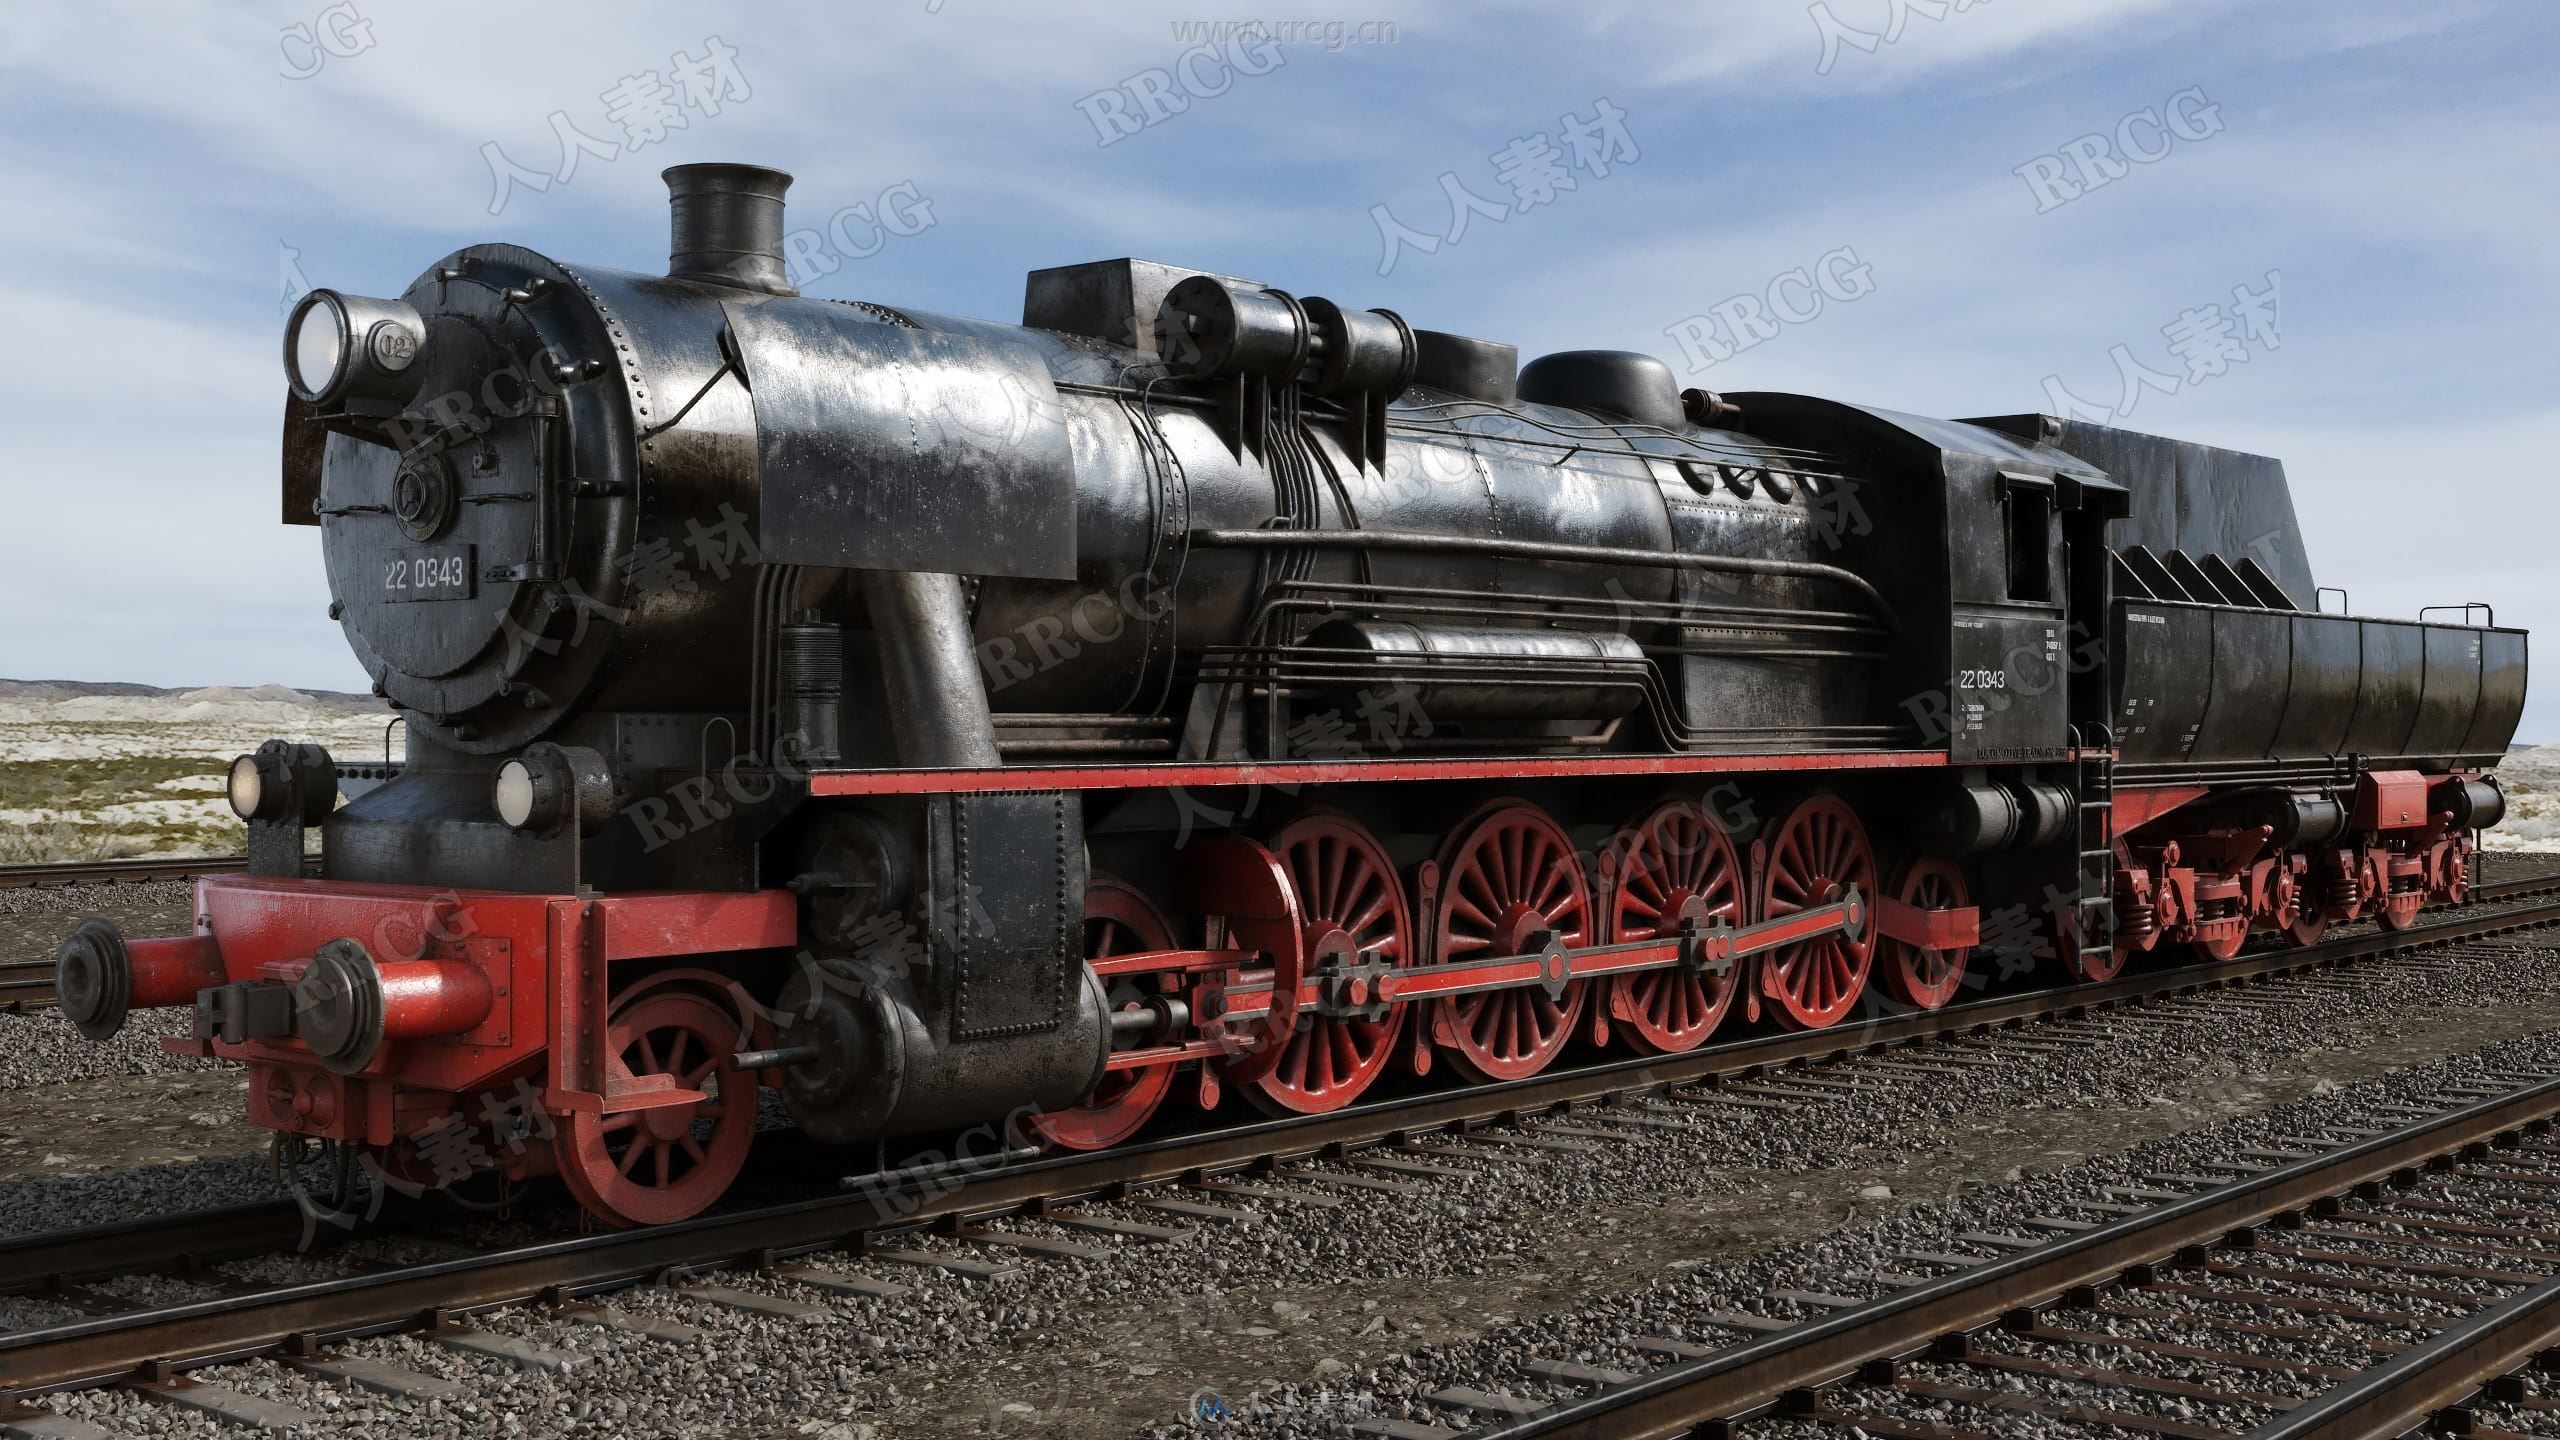 36组高品质火车铁路轨道相关3D模型合集 Evermotion Archmodels第223季